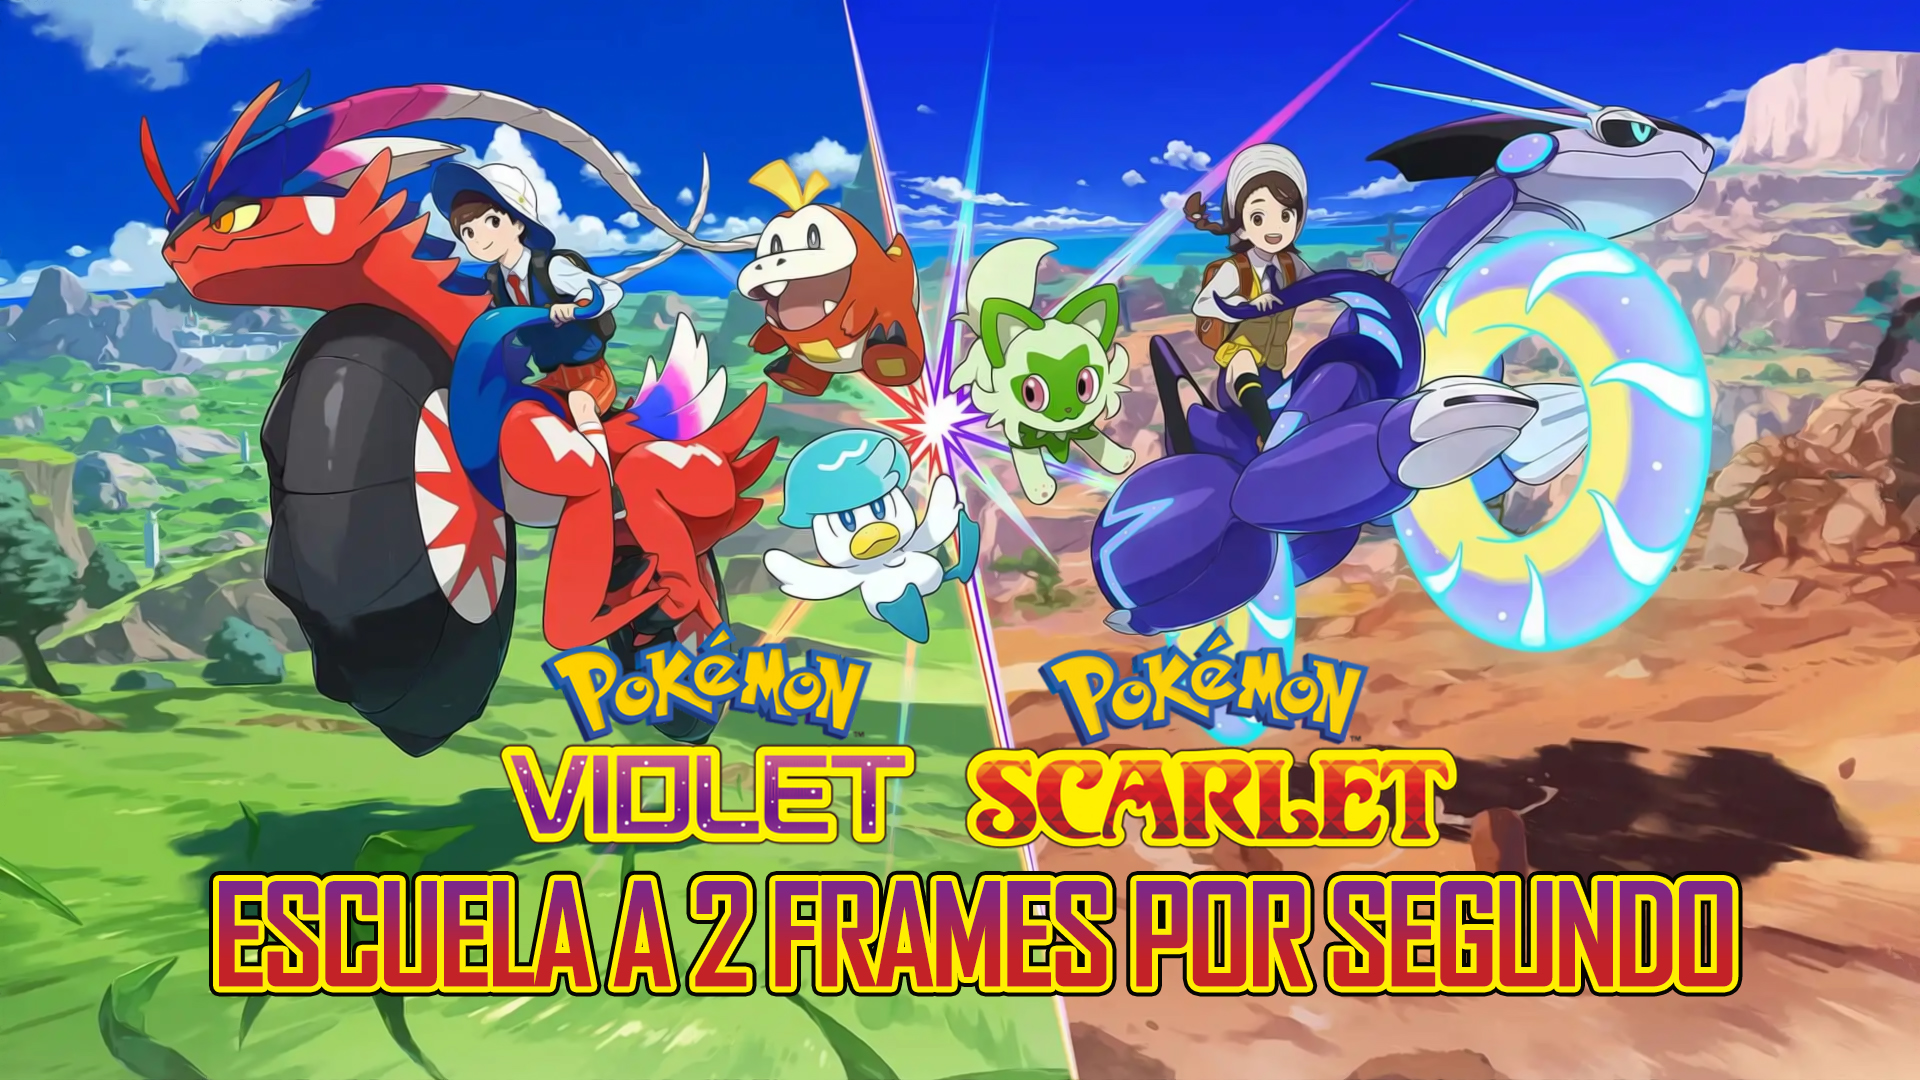 Pokémon Scarlet & Violet – Escuela a 2 Frames por Segundo